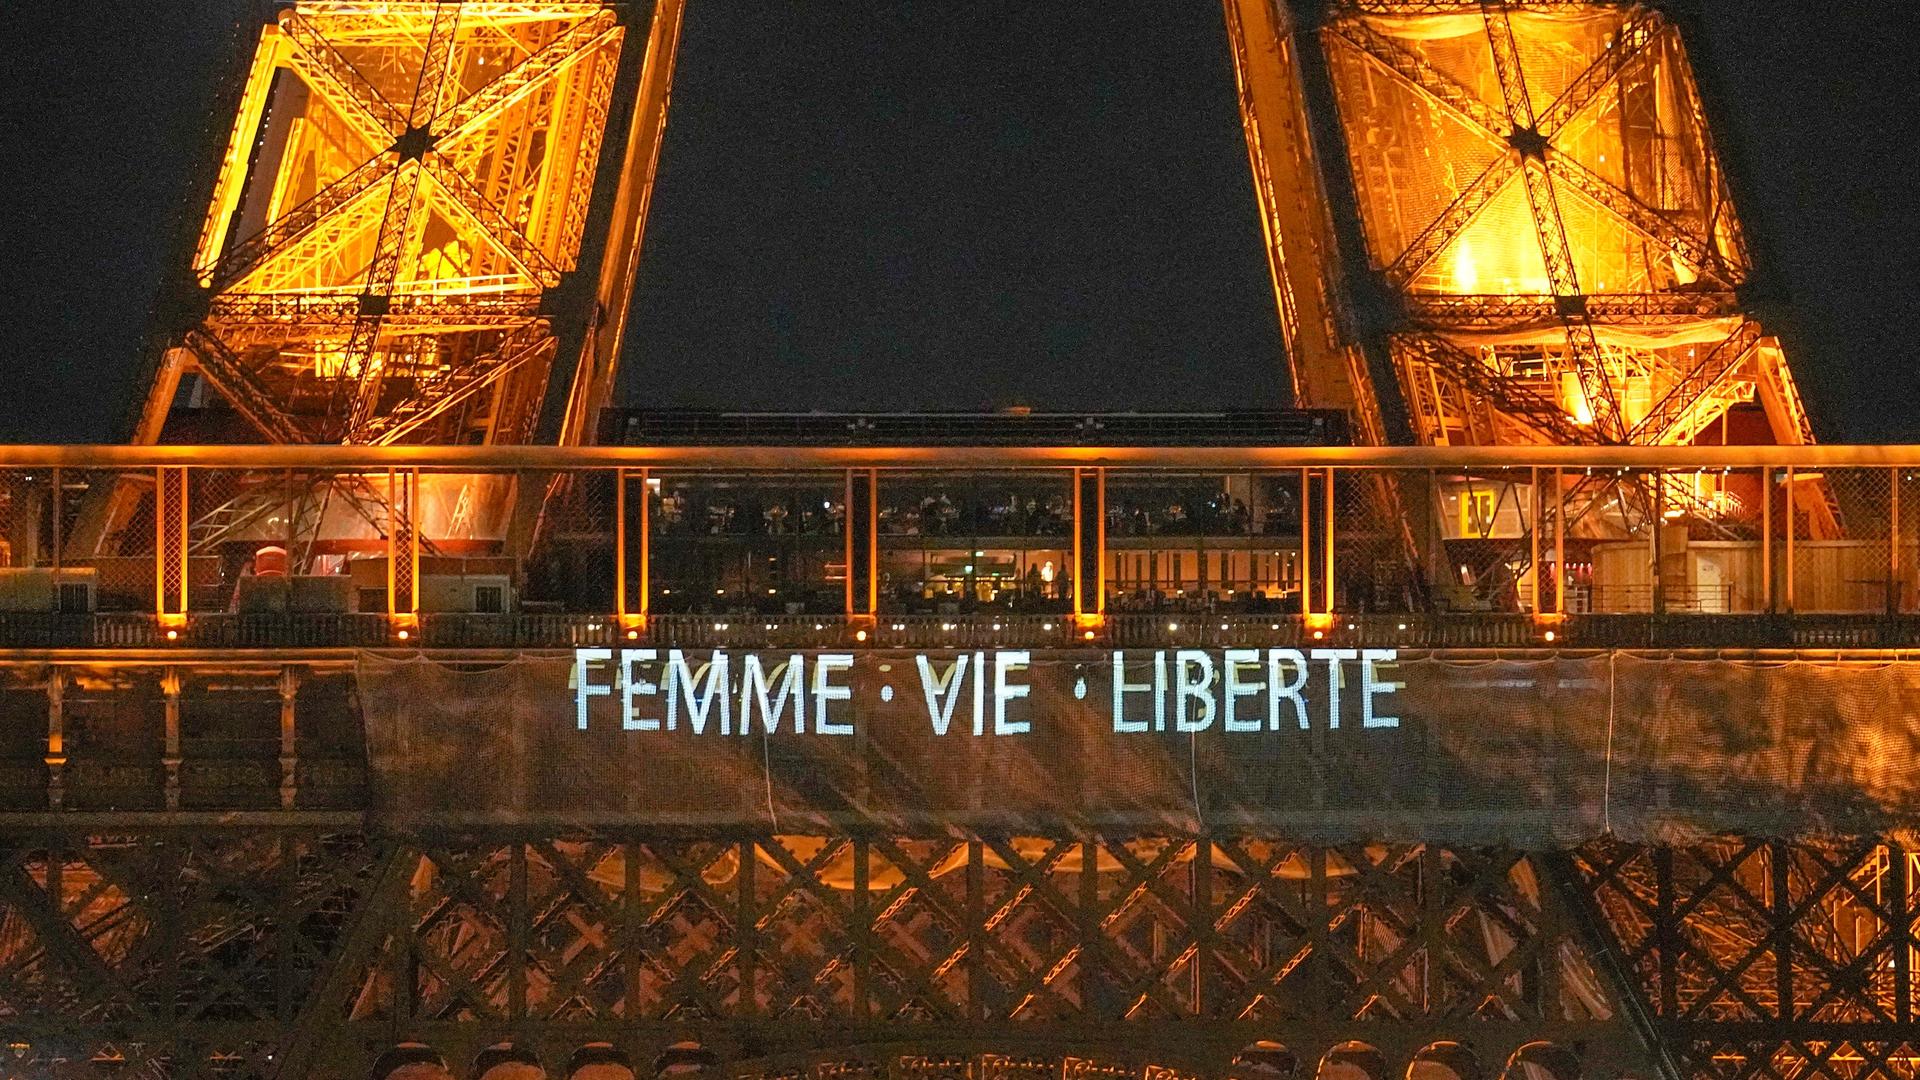 Der Eiffel-Turm leuchtet in der Nacht. Man sieht  den Spruch:  "Femme, Vie, Liberté". Das bedeutet "Frau, Leben, Freiheit".